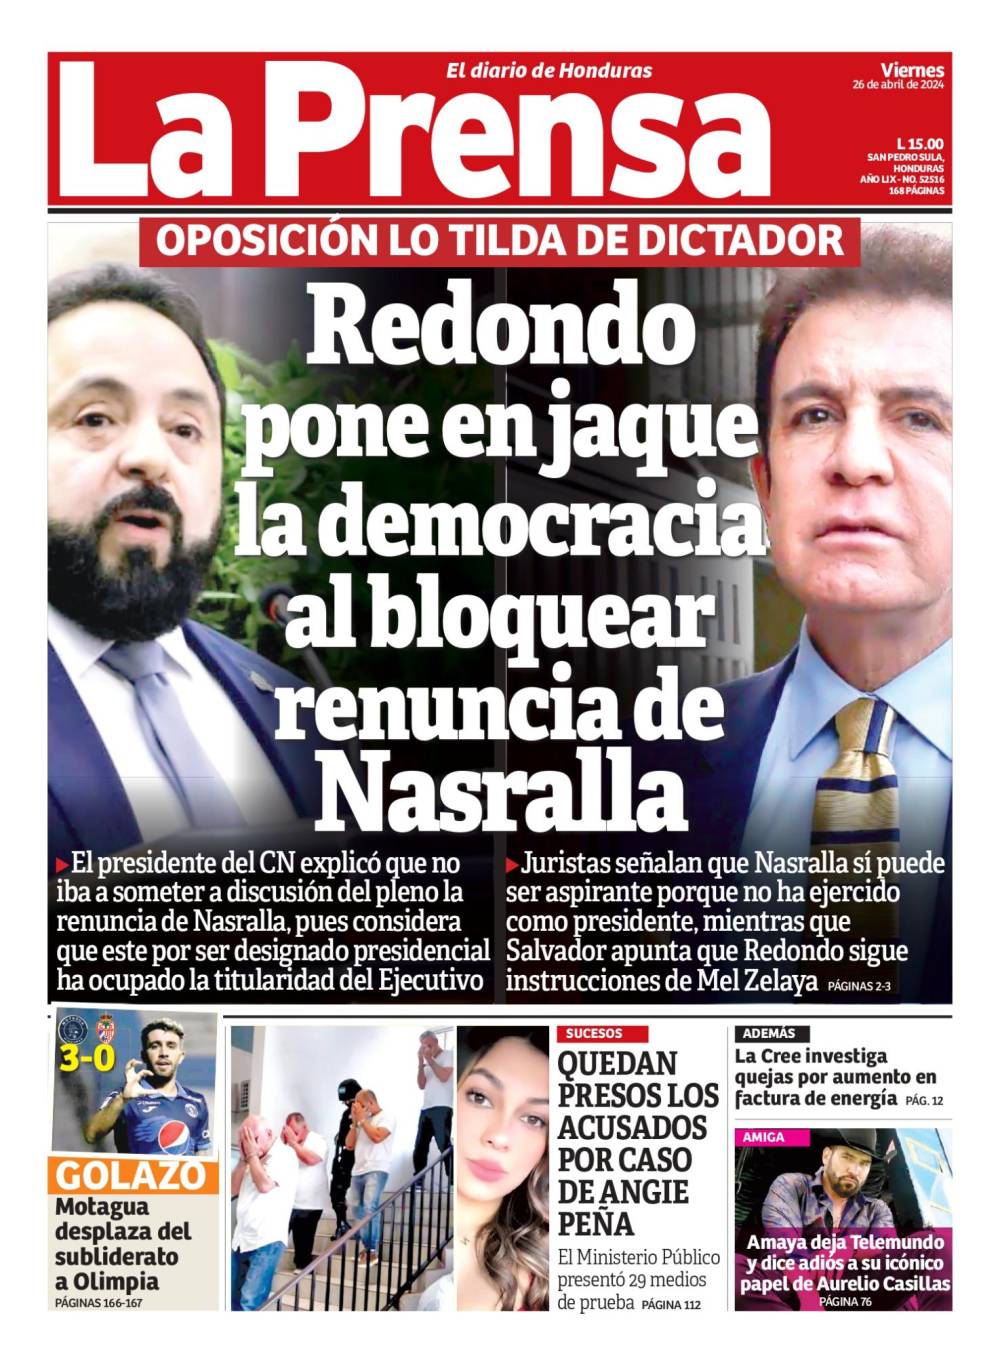 Redondo pone en jaque mate la democracia al bloquear renuncia de Nasralla